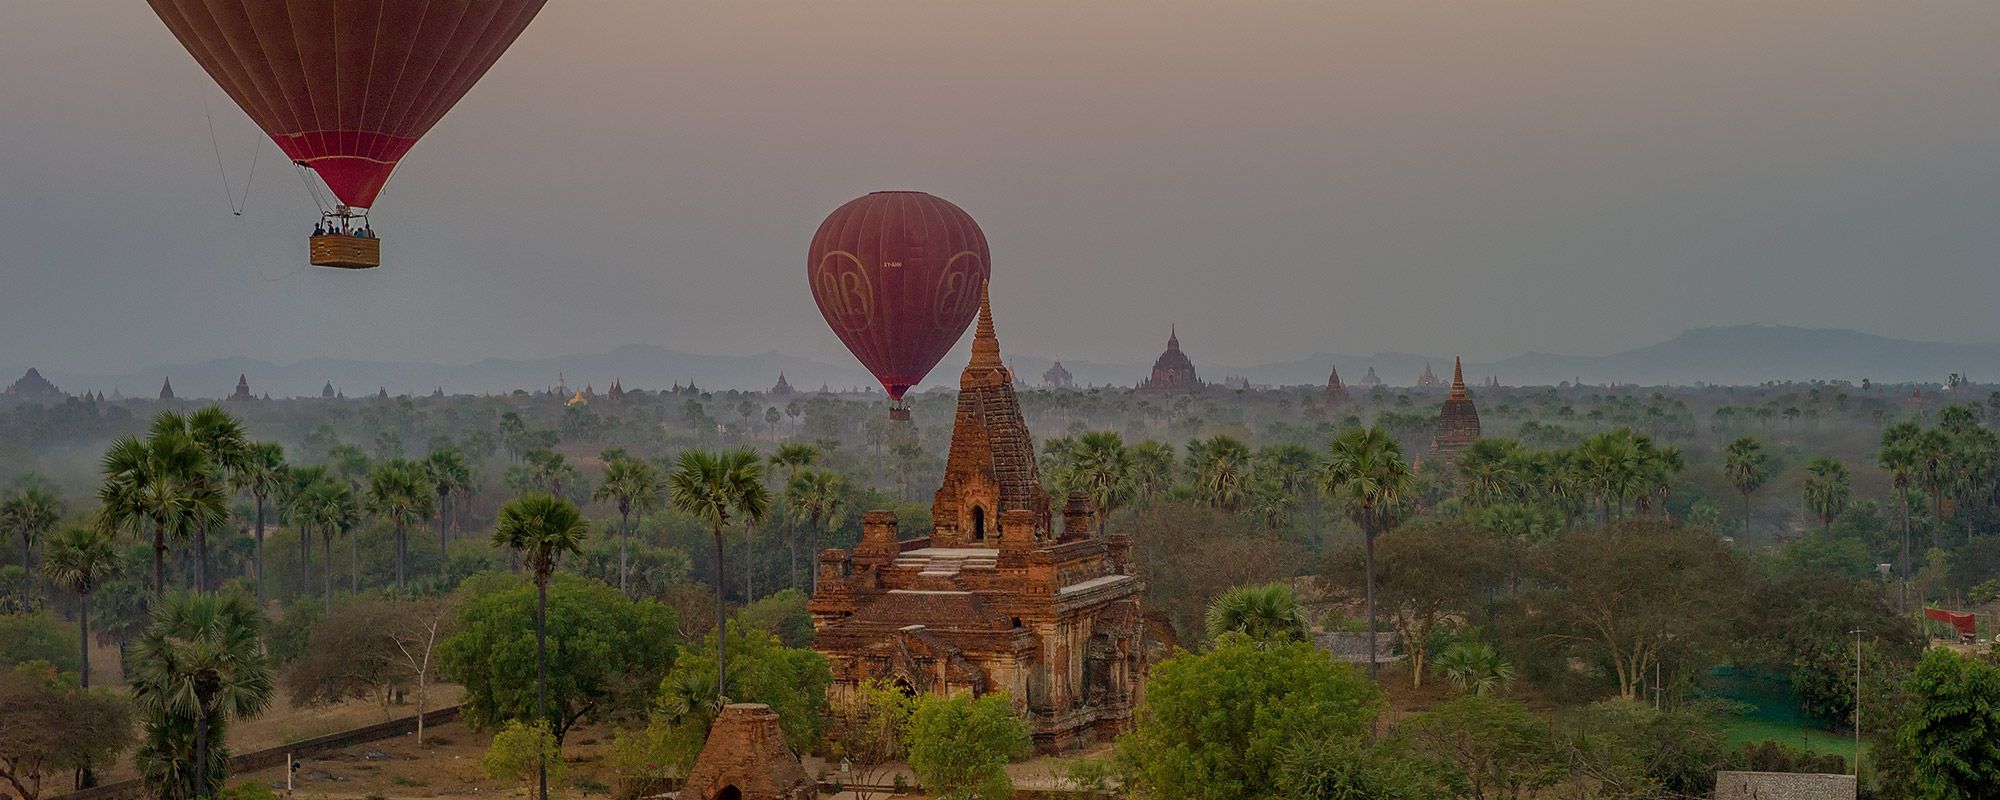 Ballons über den Tempeln von Bagan